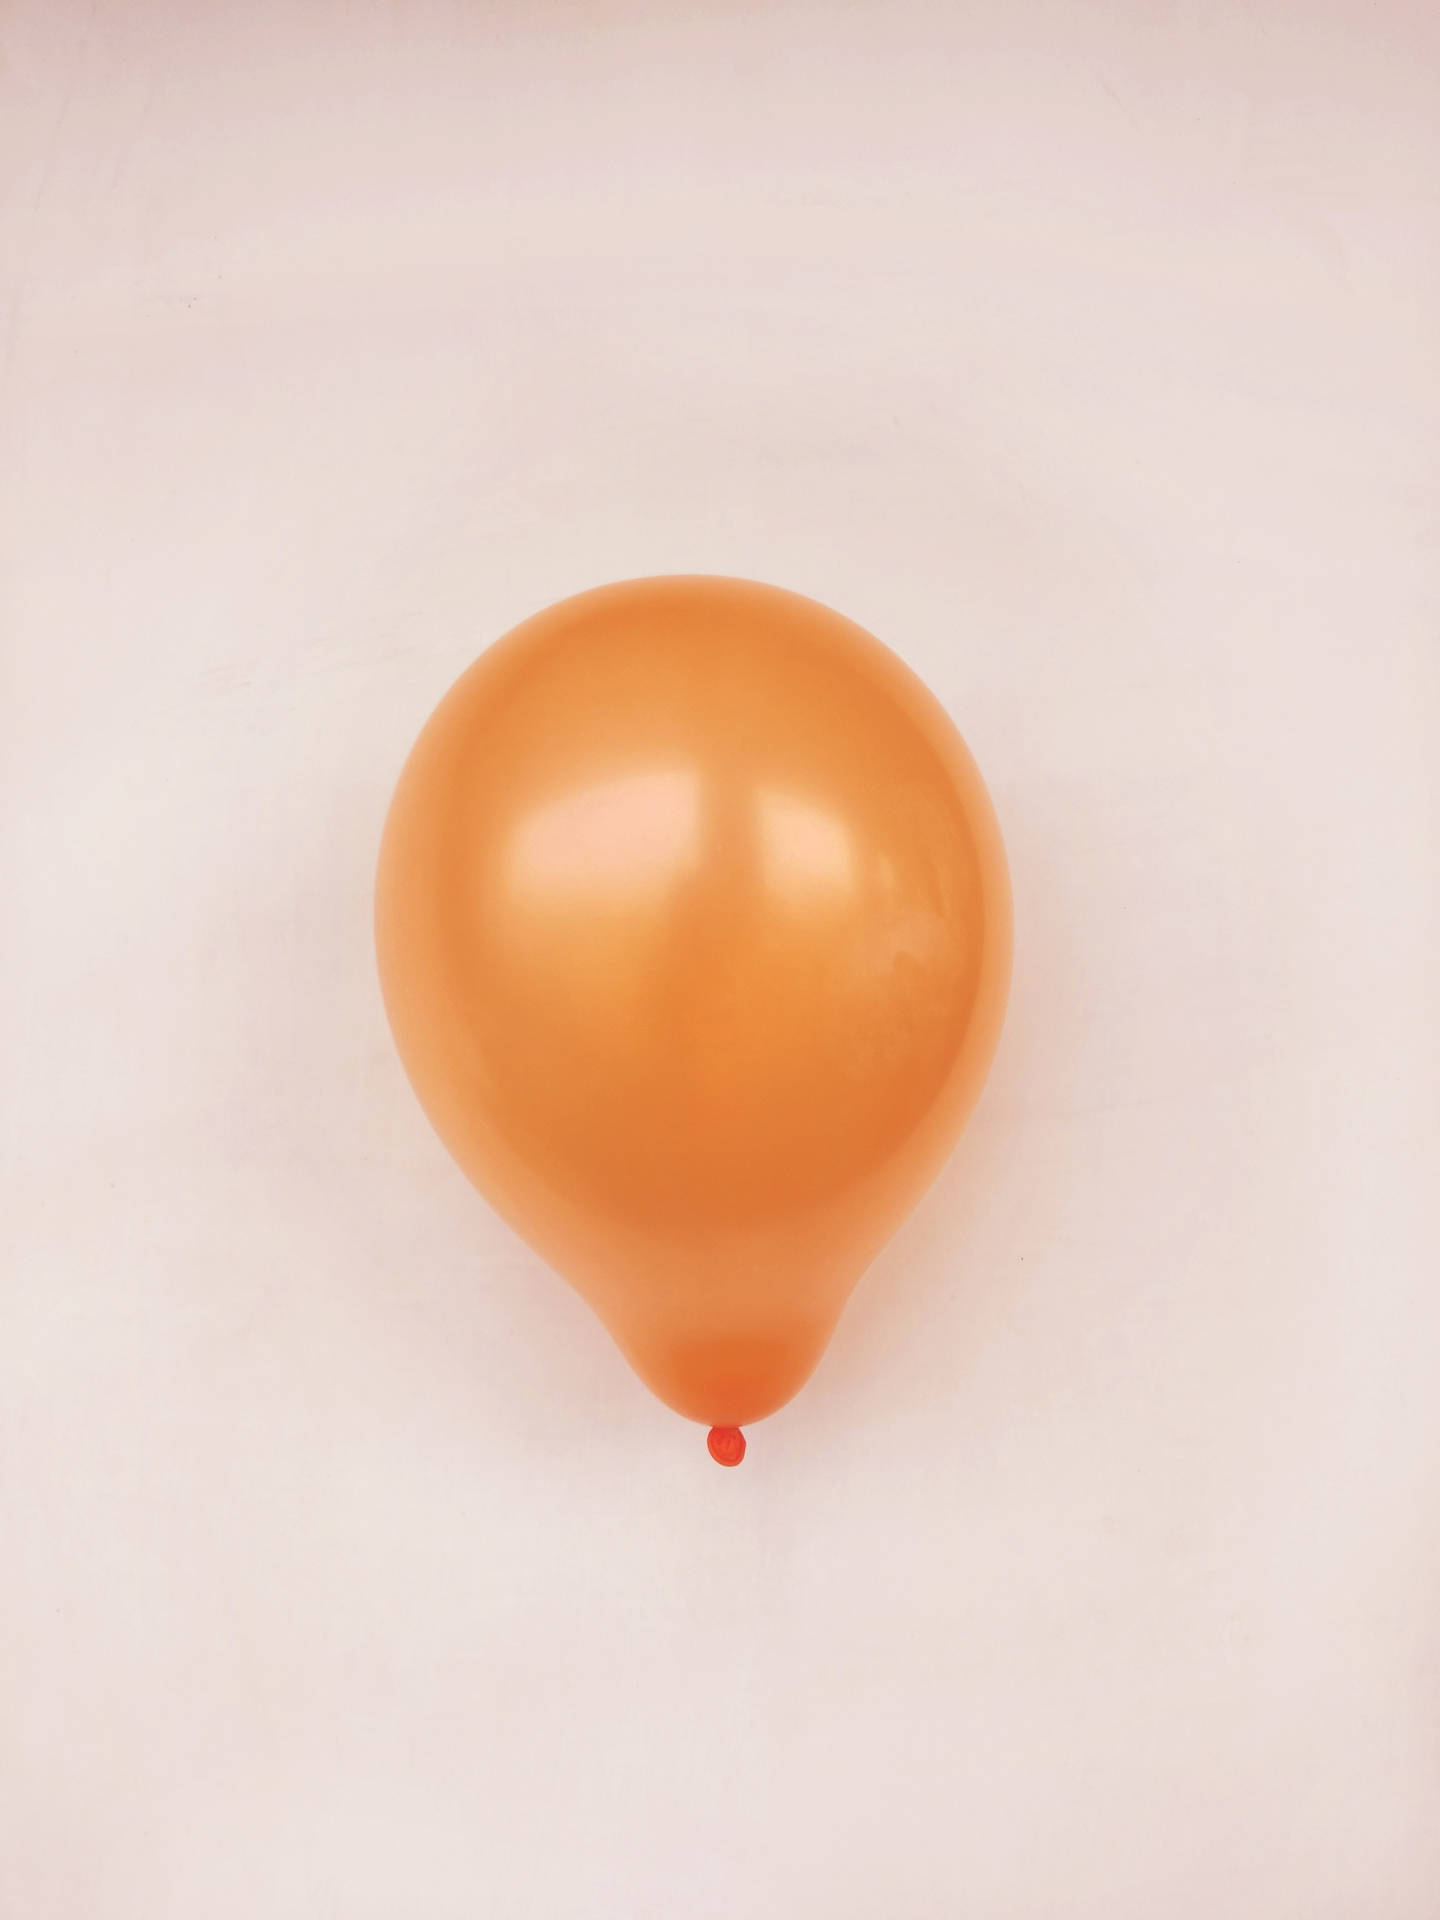 Orange Balloon In Beige Background Background